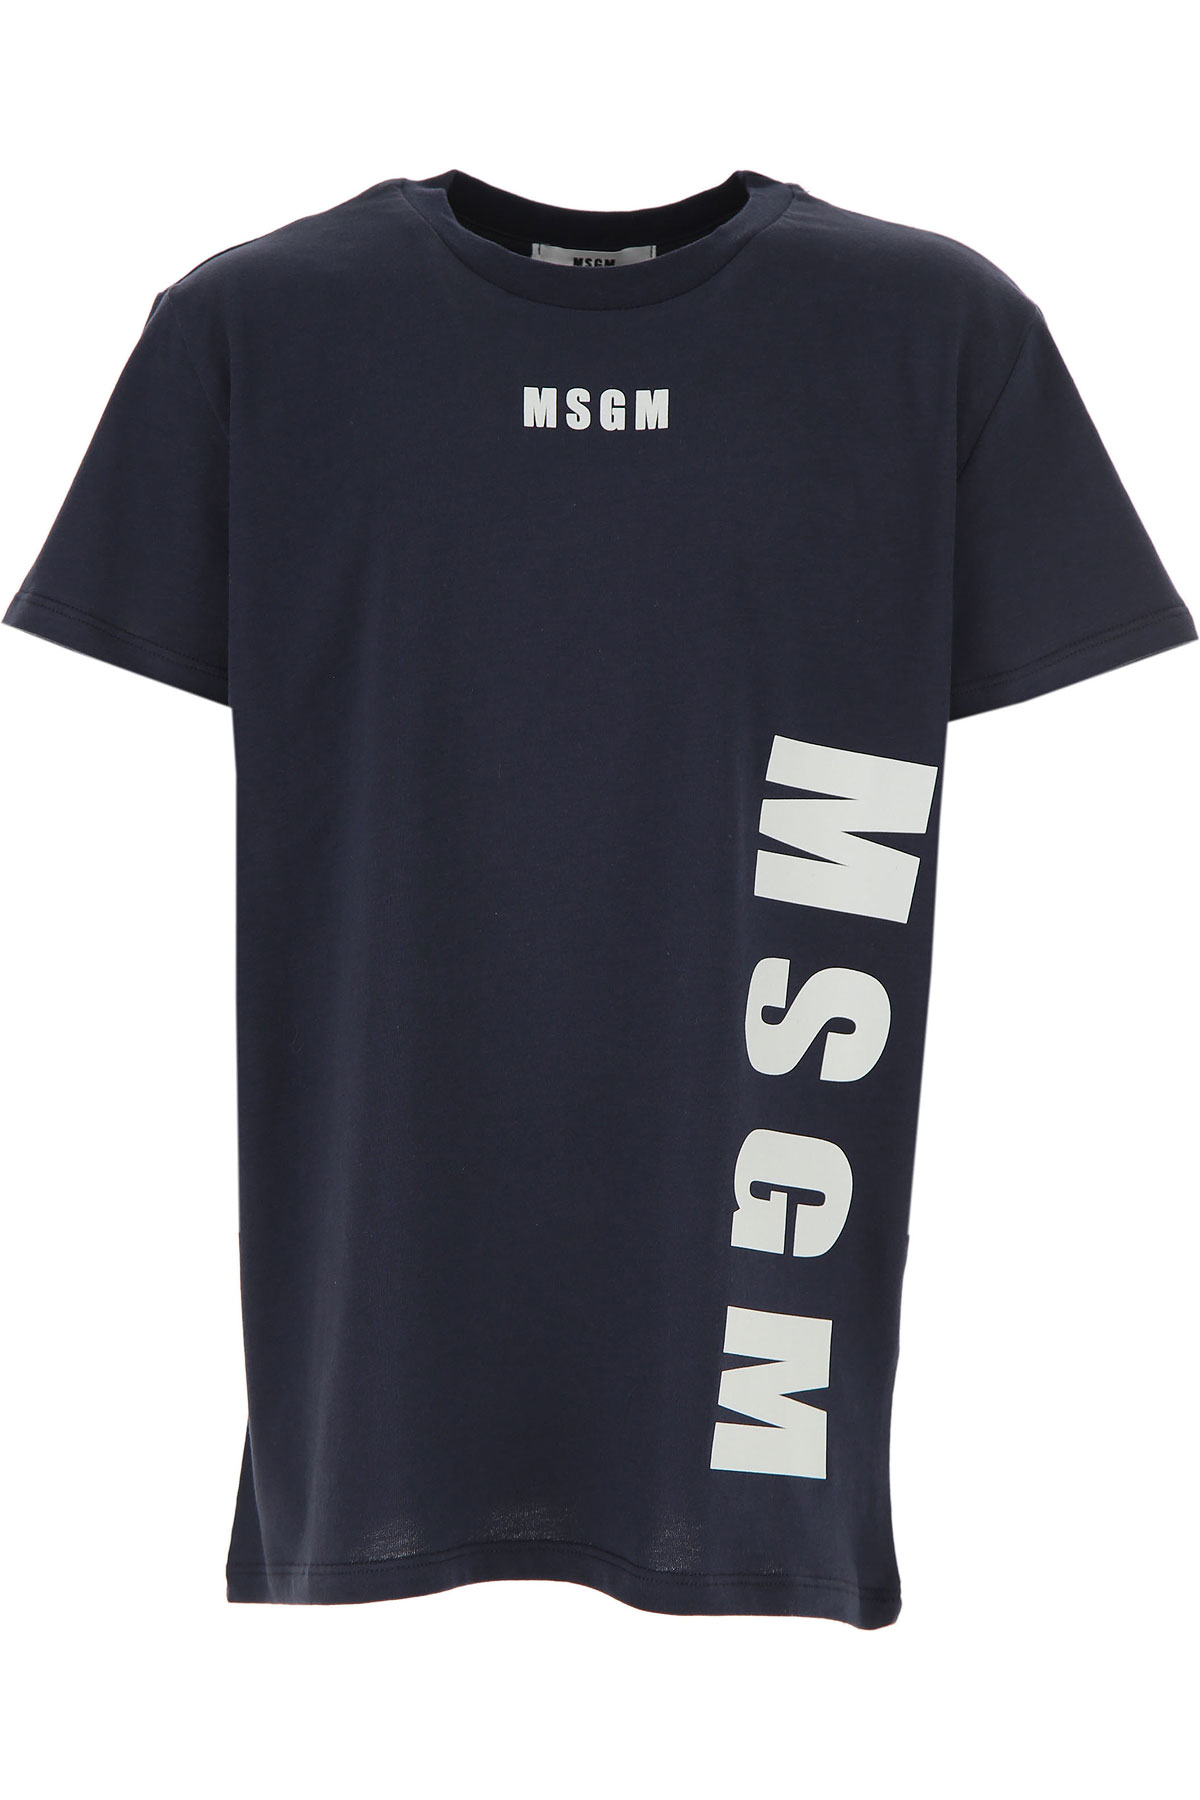 MSGM Kinder T-Shirt für Jungen Günstig im Sale, Blau, Baumwolle, 2017, 10Y 12Y